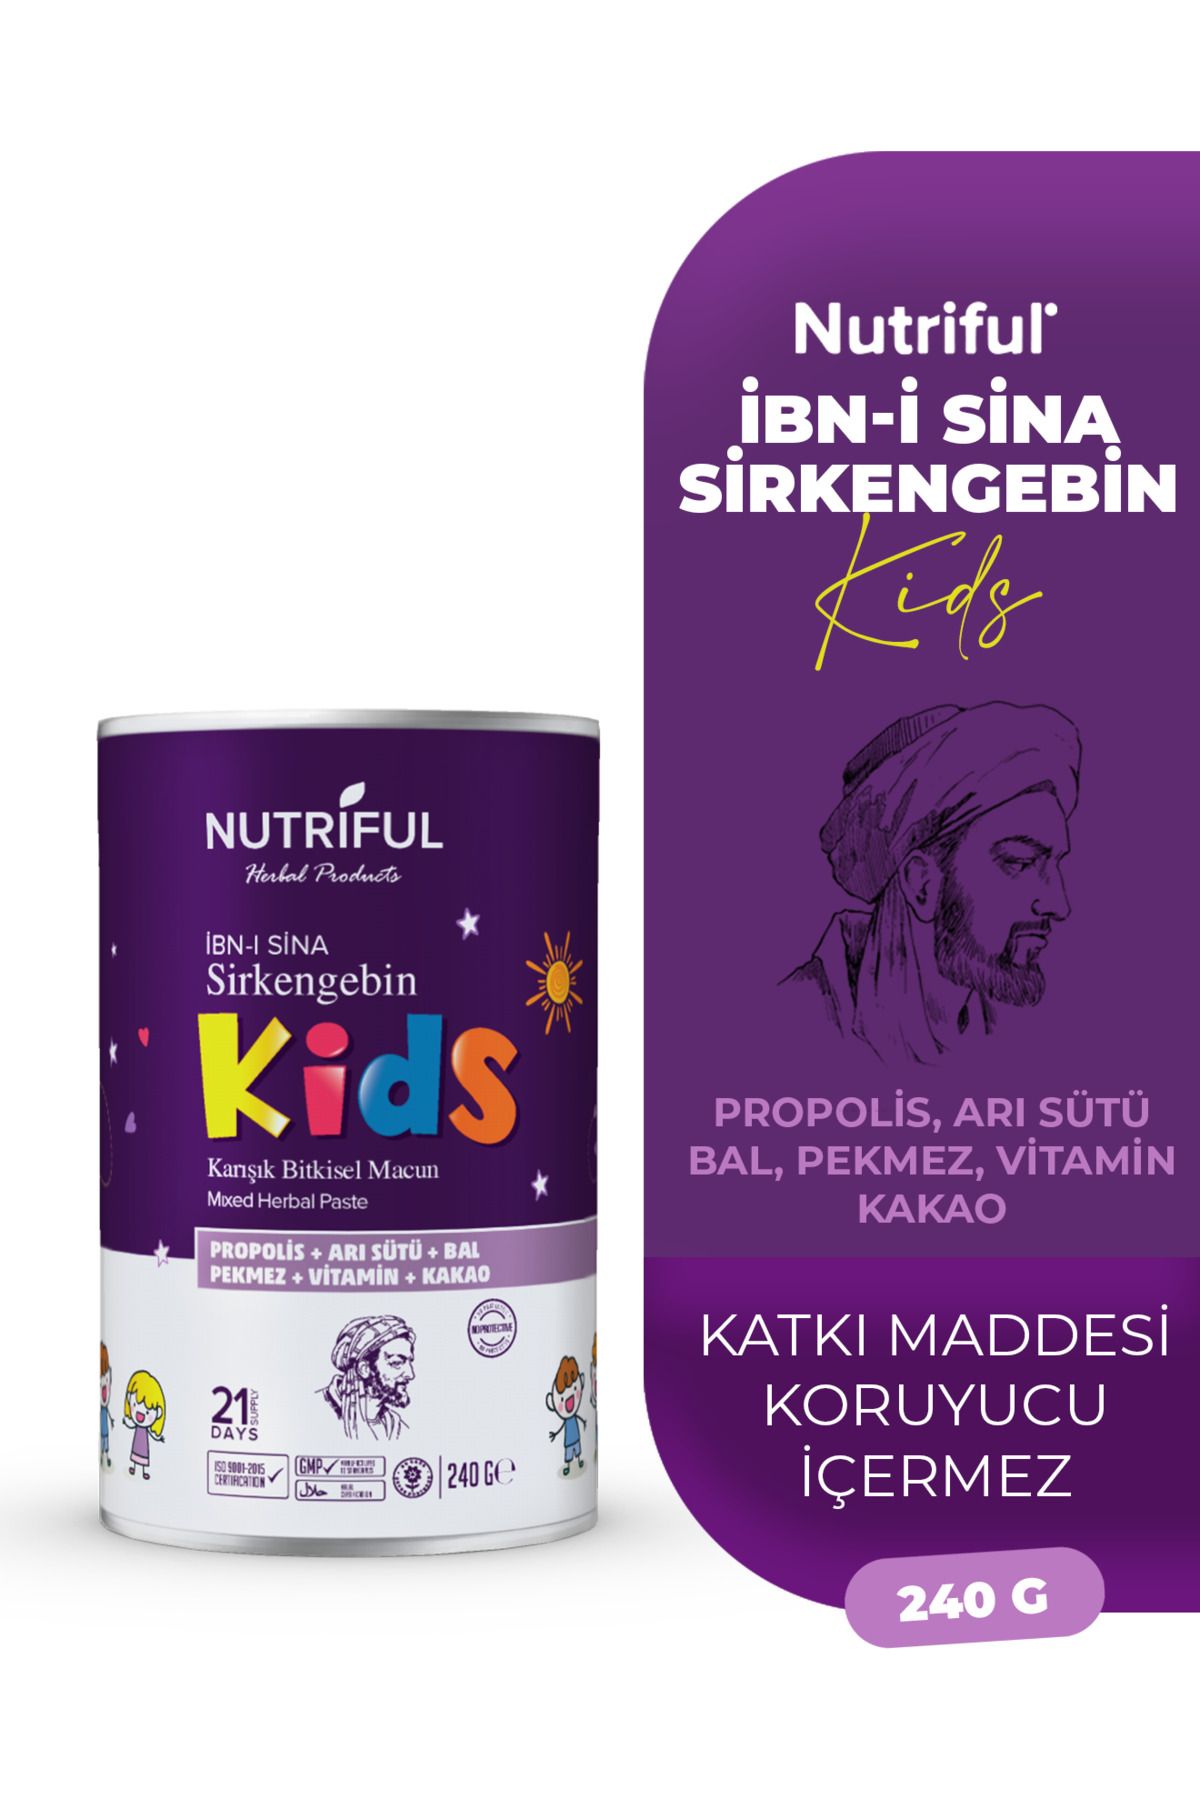 Nutriful İbni Sina Sirkengebin Kids Çocuklara Özel Macun Propolis, Arı Sütü, Vitamin Kakao